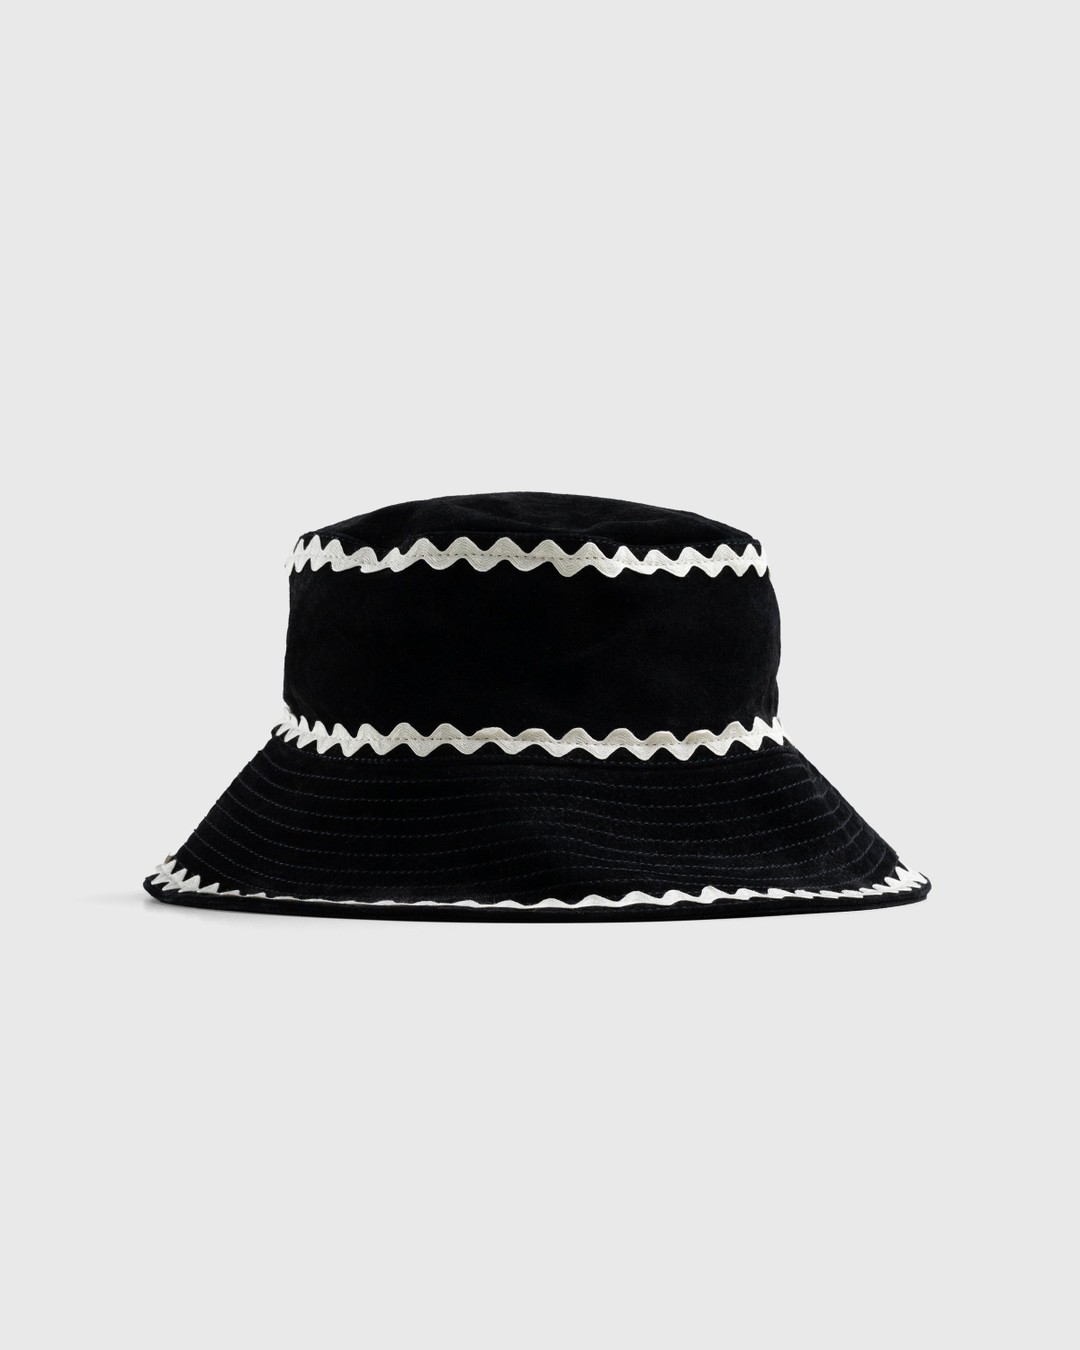 Bode – Suede Rickrack Hat Black | Highsnobiety Shop